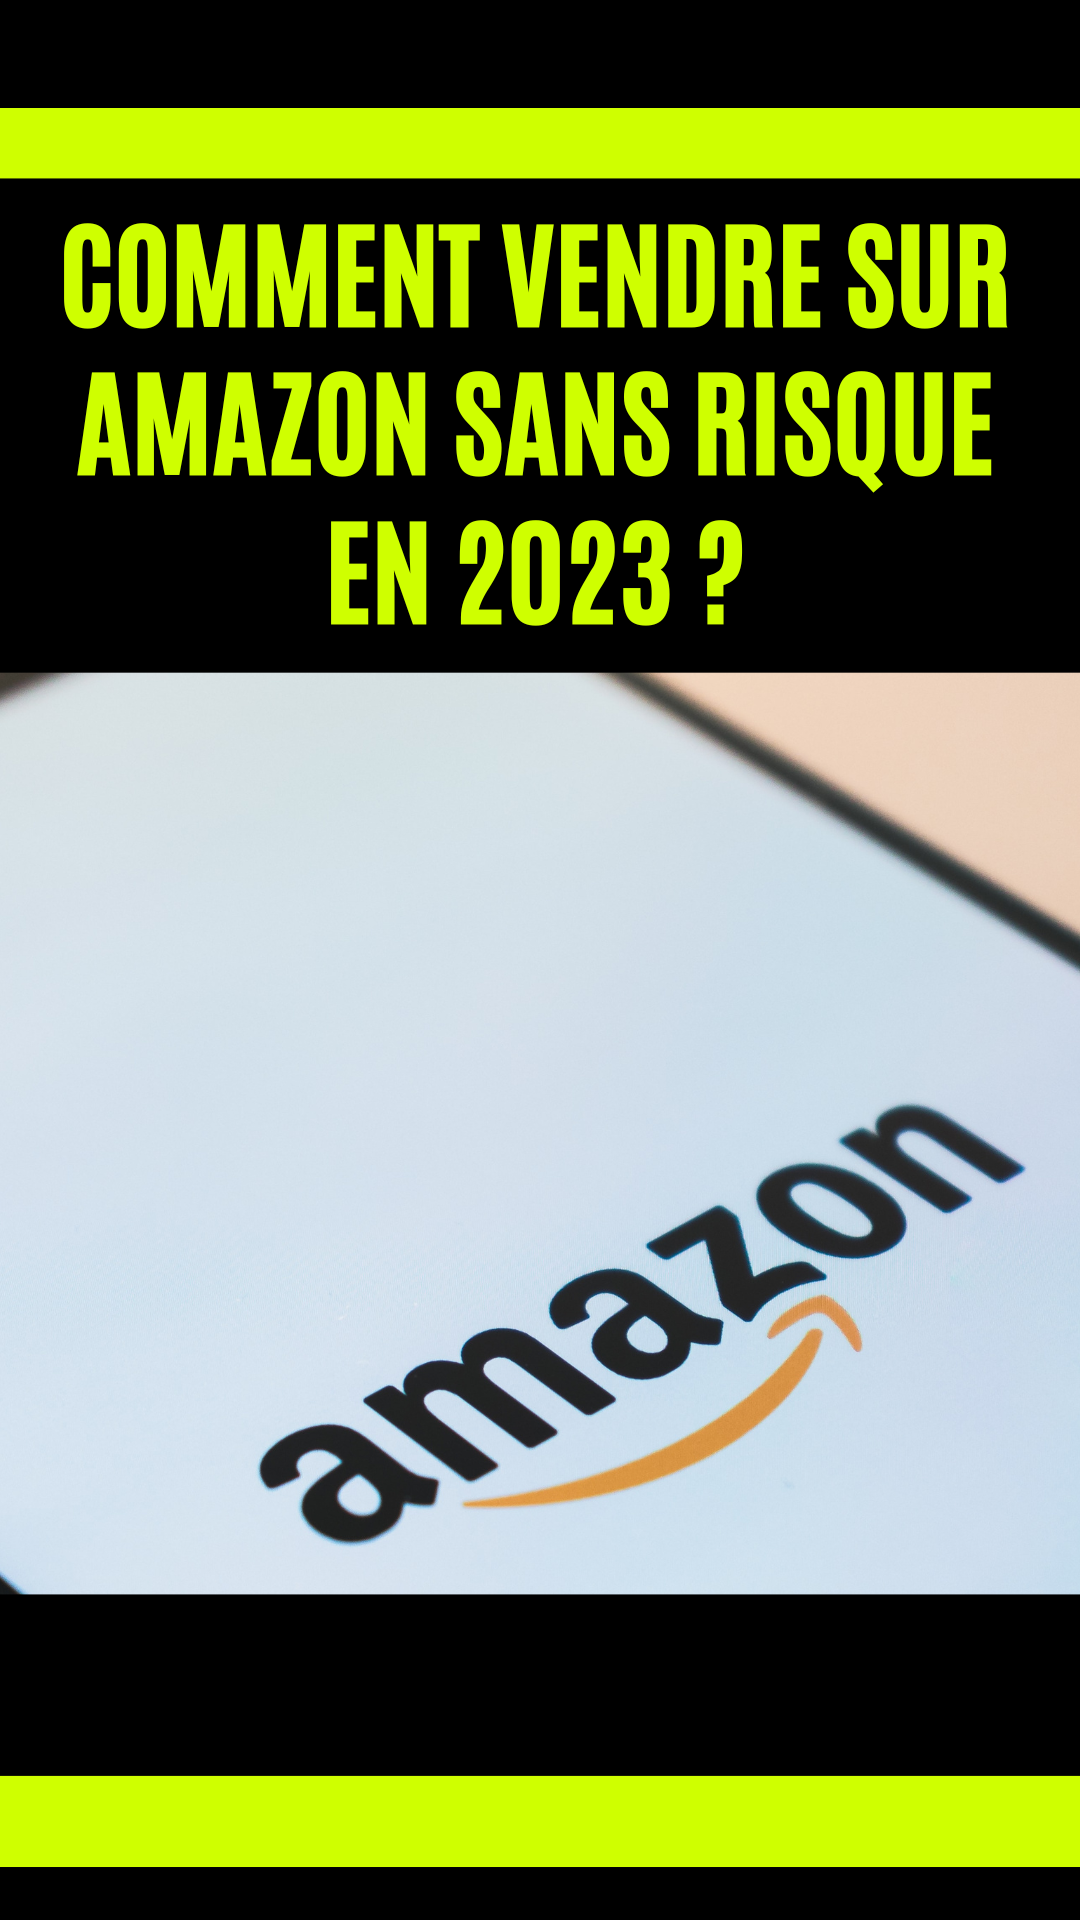 Comment vendre sur Amazon sans risque en 2023 ?